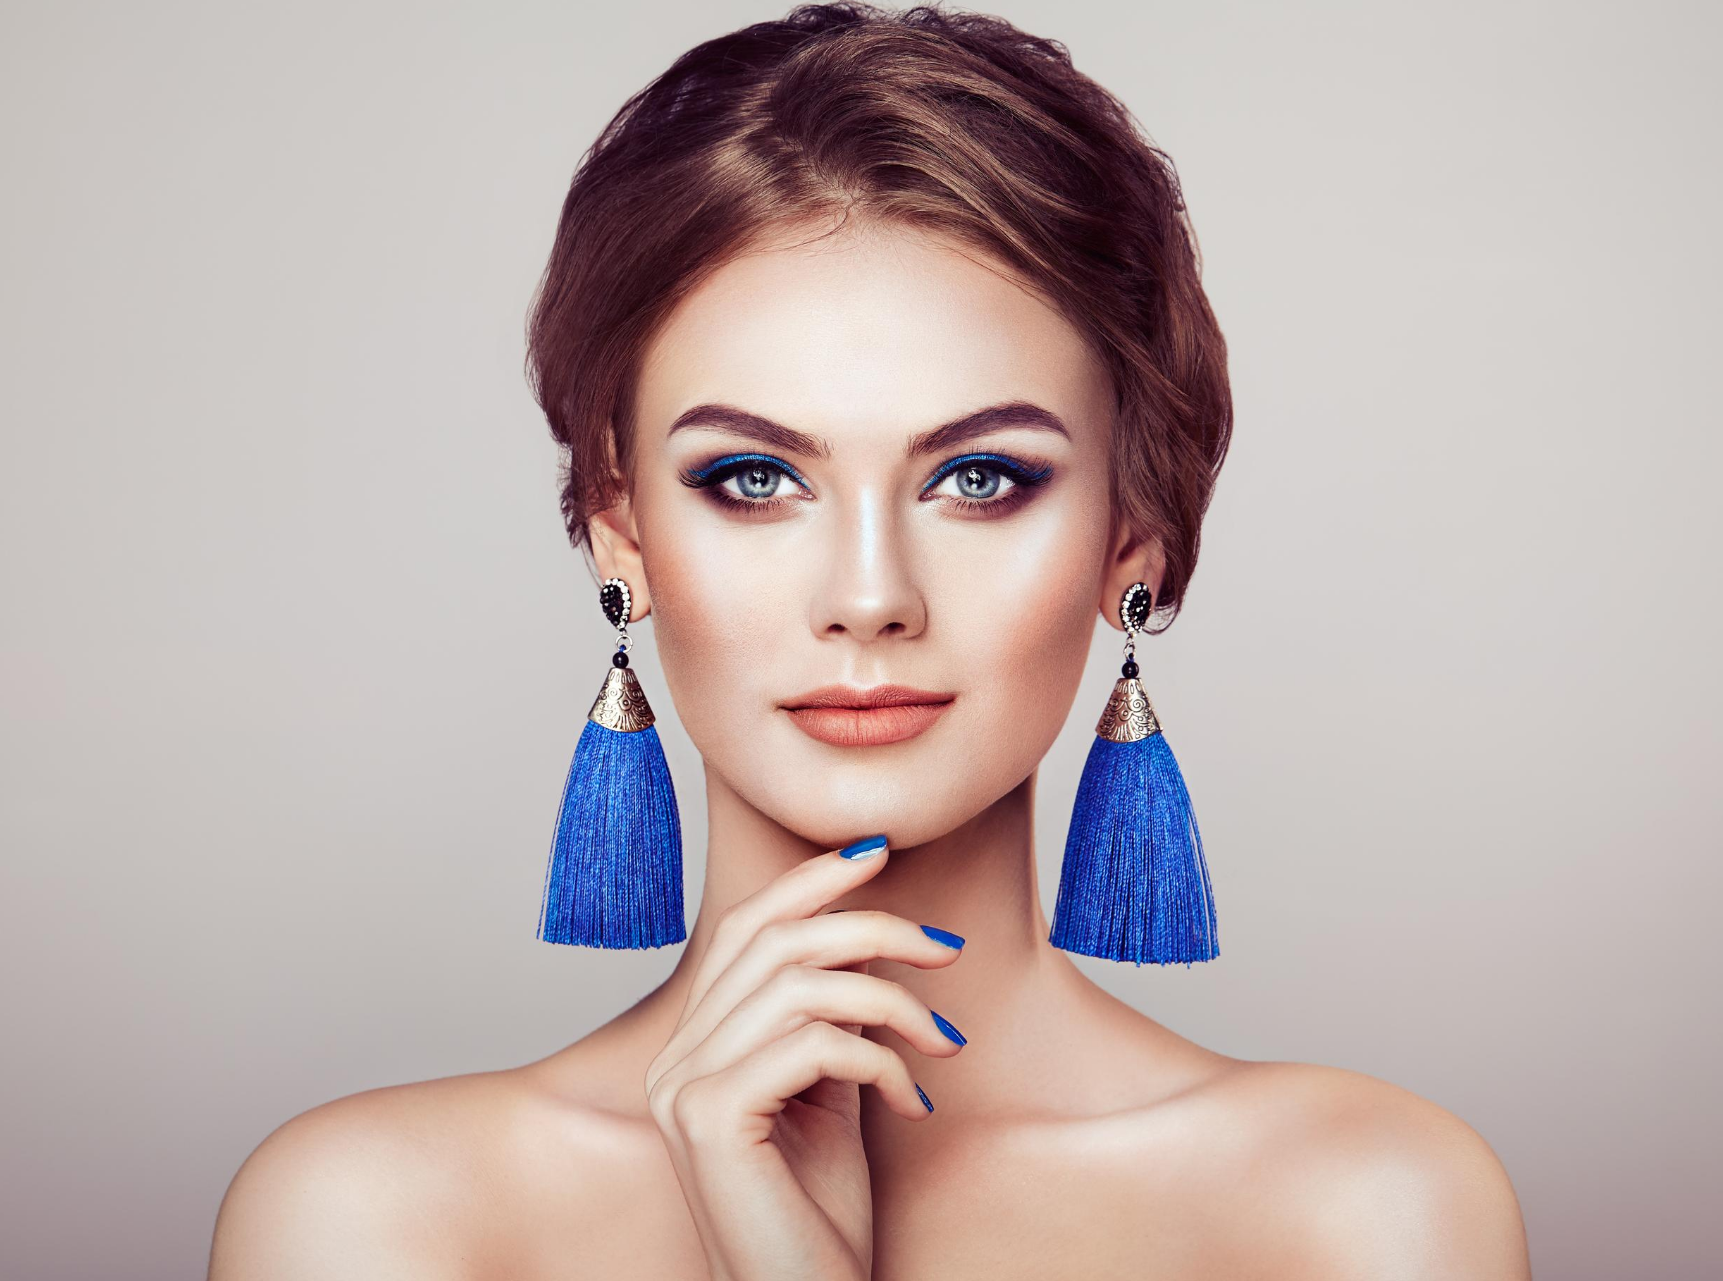 Earrings: Types, Closures, Choosing & Styling Tips